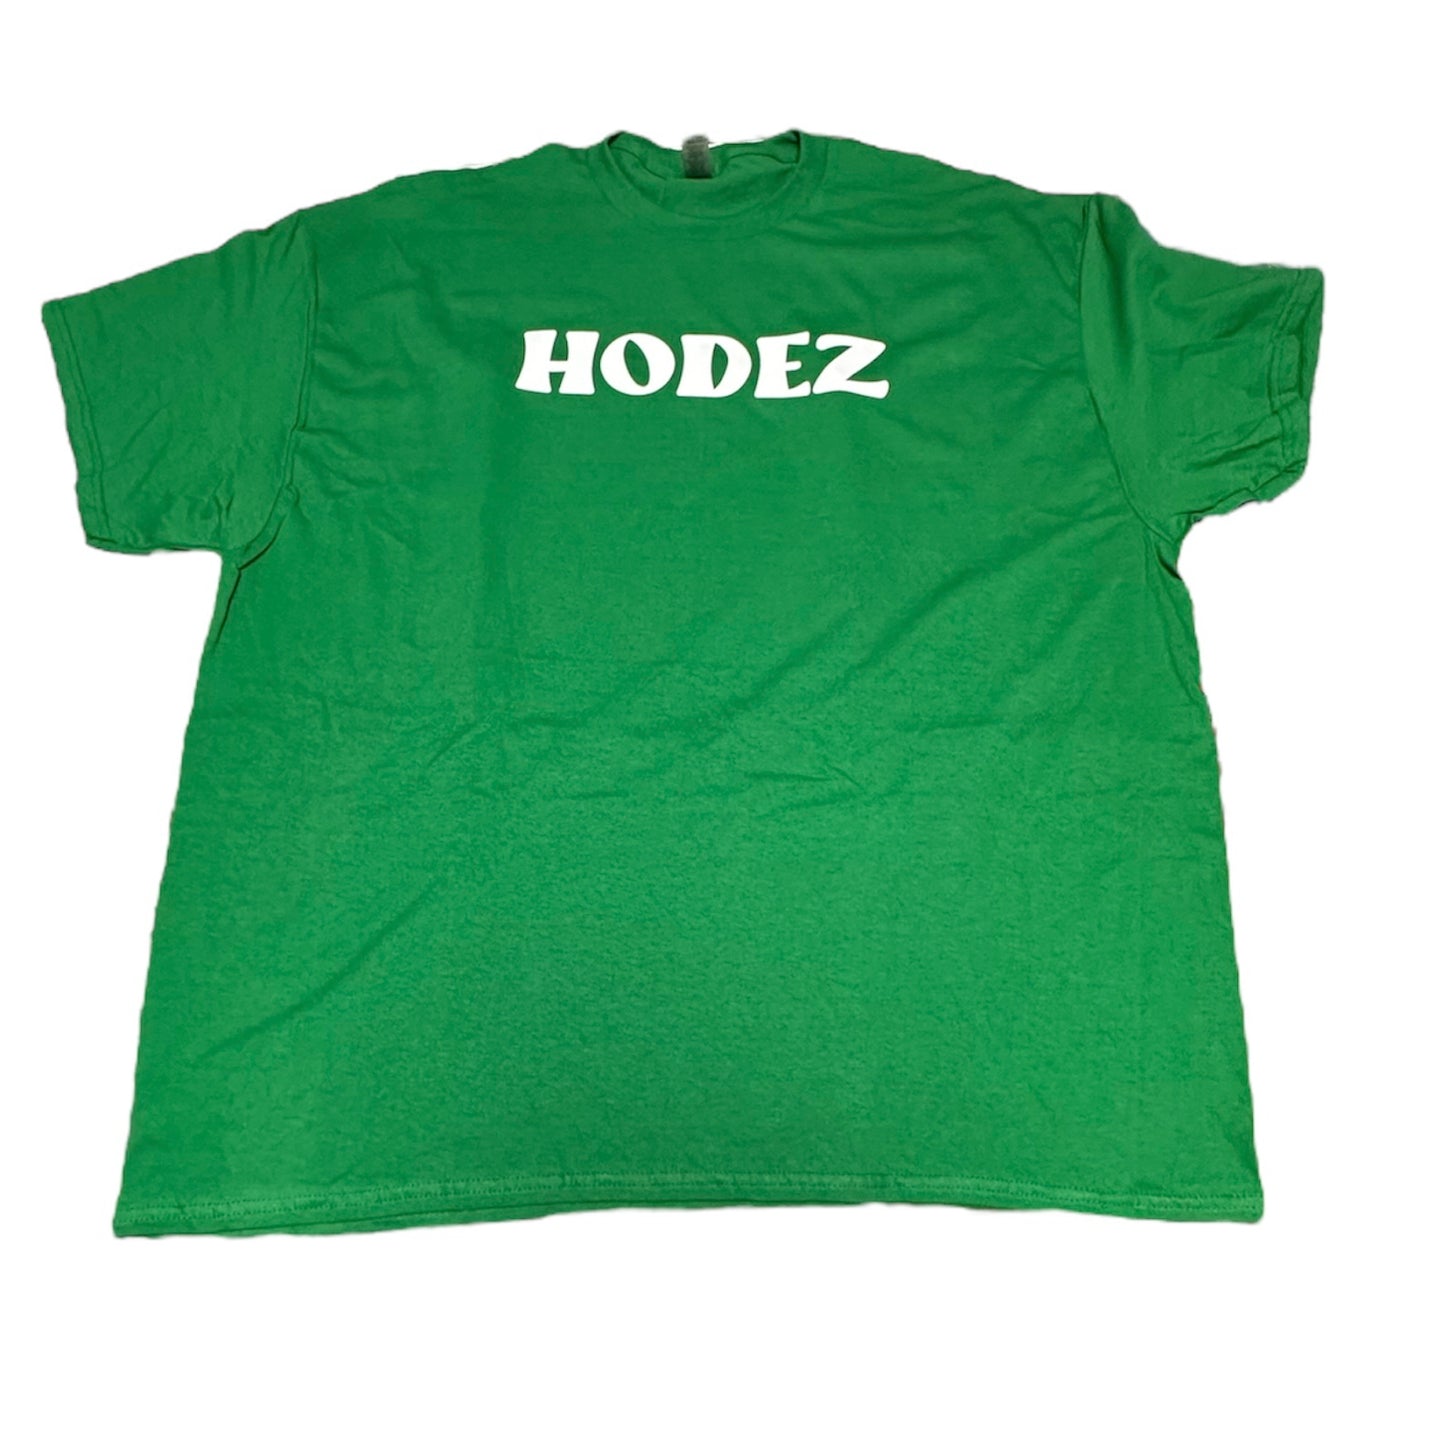 Hodez T-Shirt